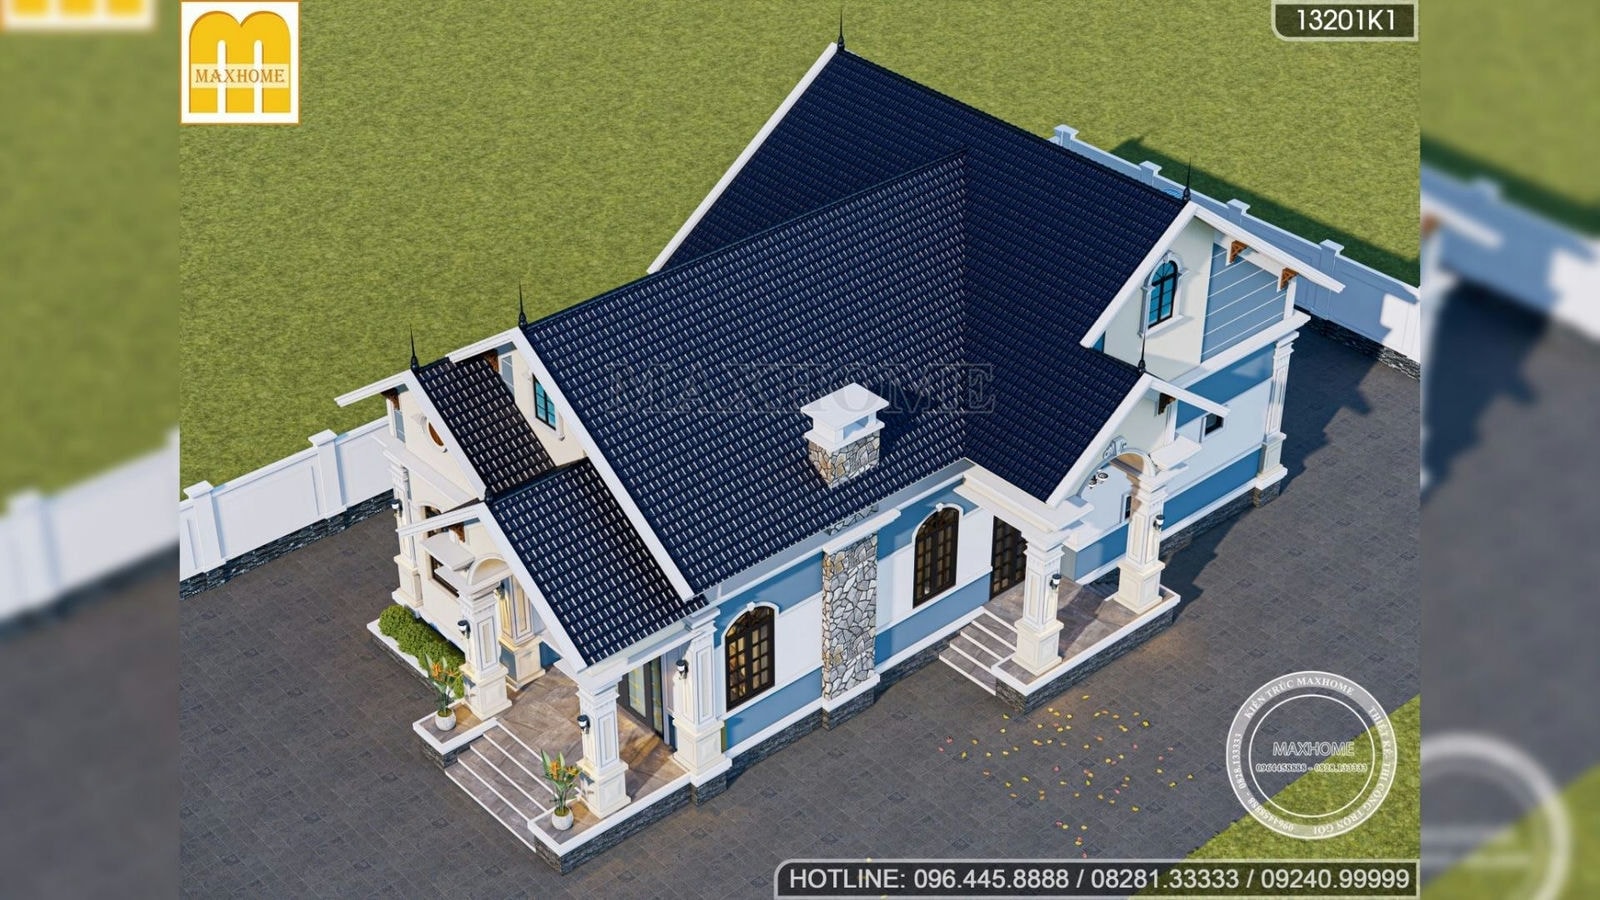 Thiết kế mẫu biệt thự vườn mái Thái 10 x 20m tại Long An | MH01670